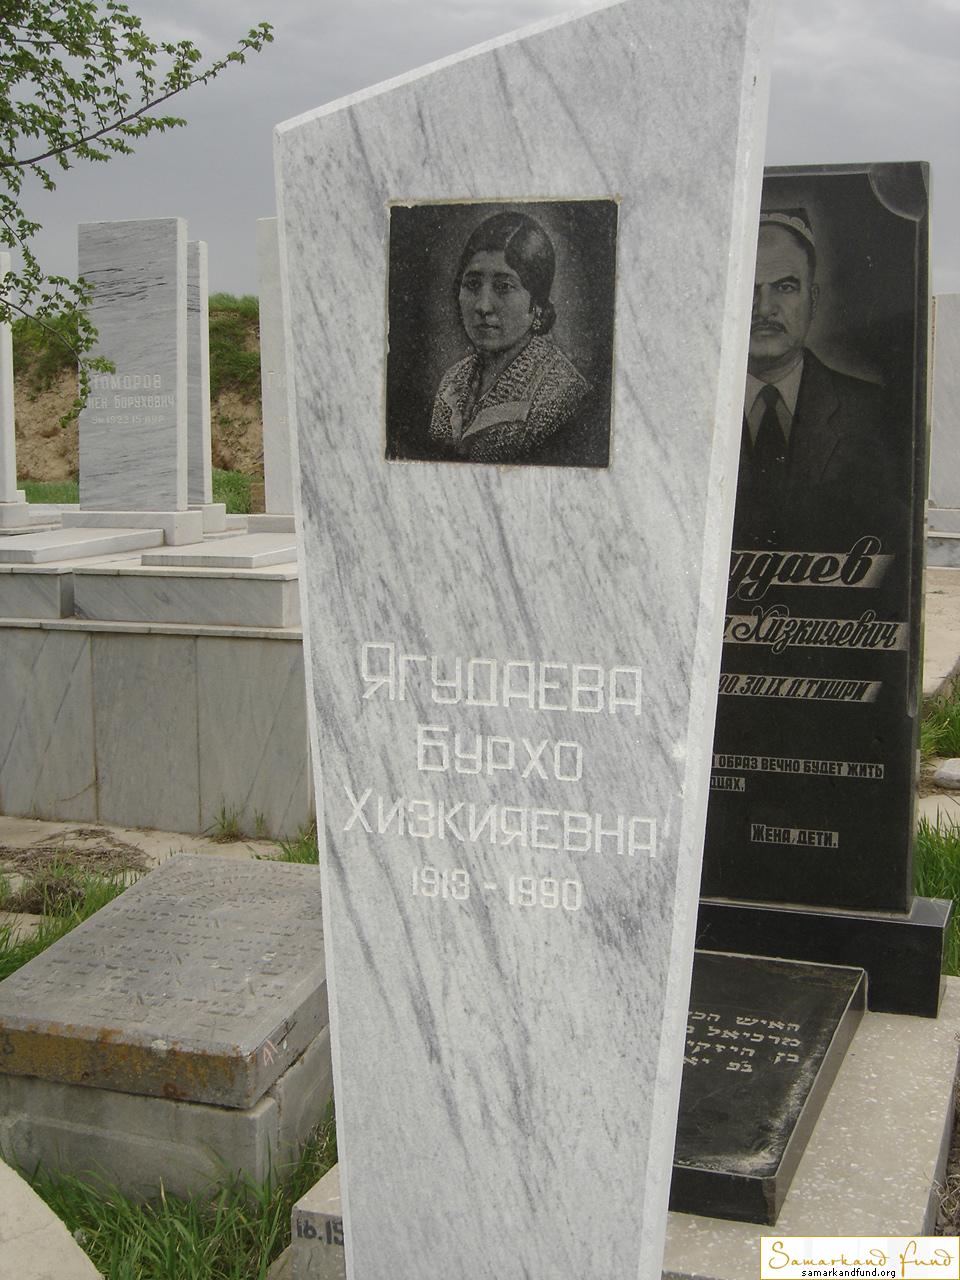 Ягудаева Бурхо Хизкияевна 1913 -1990 зах. 151.28  № 16.JPG